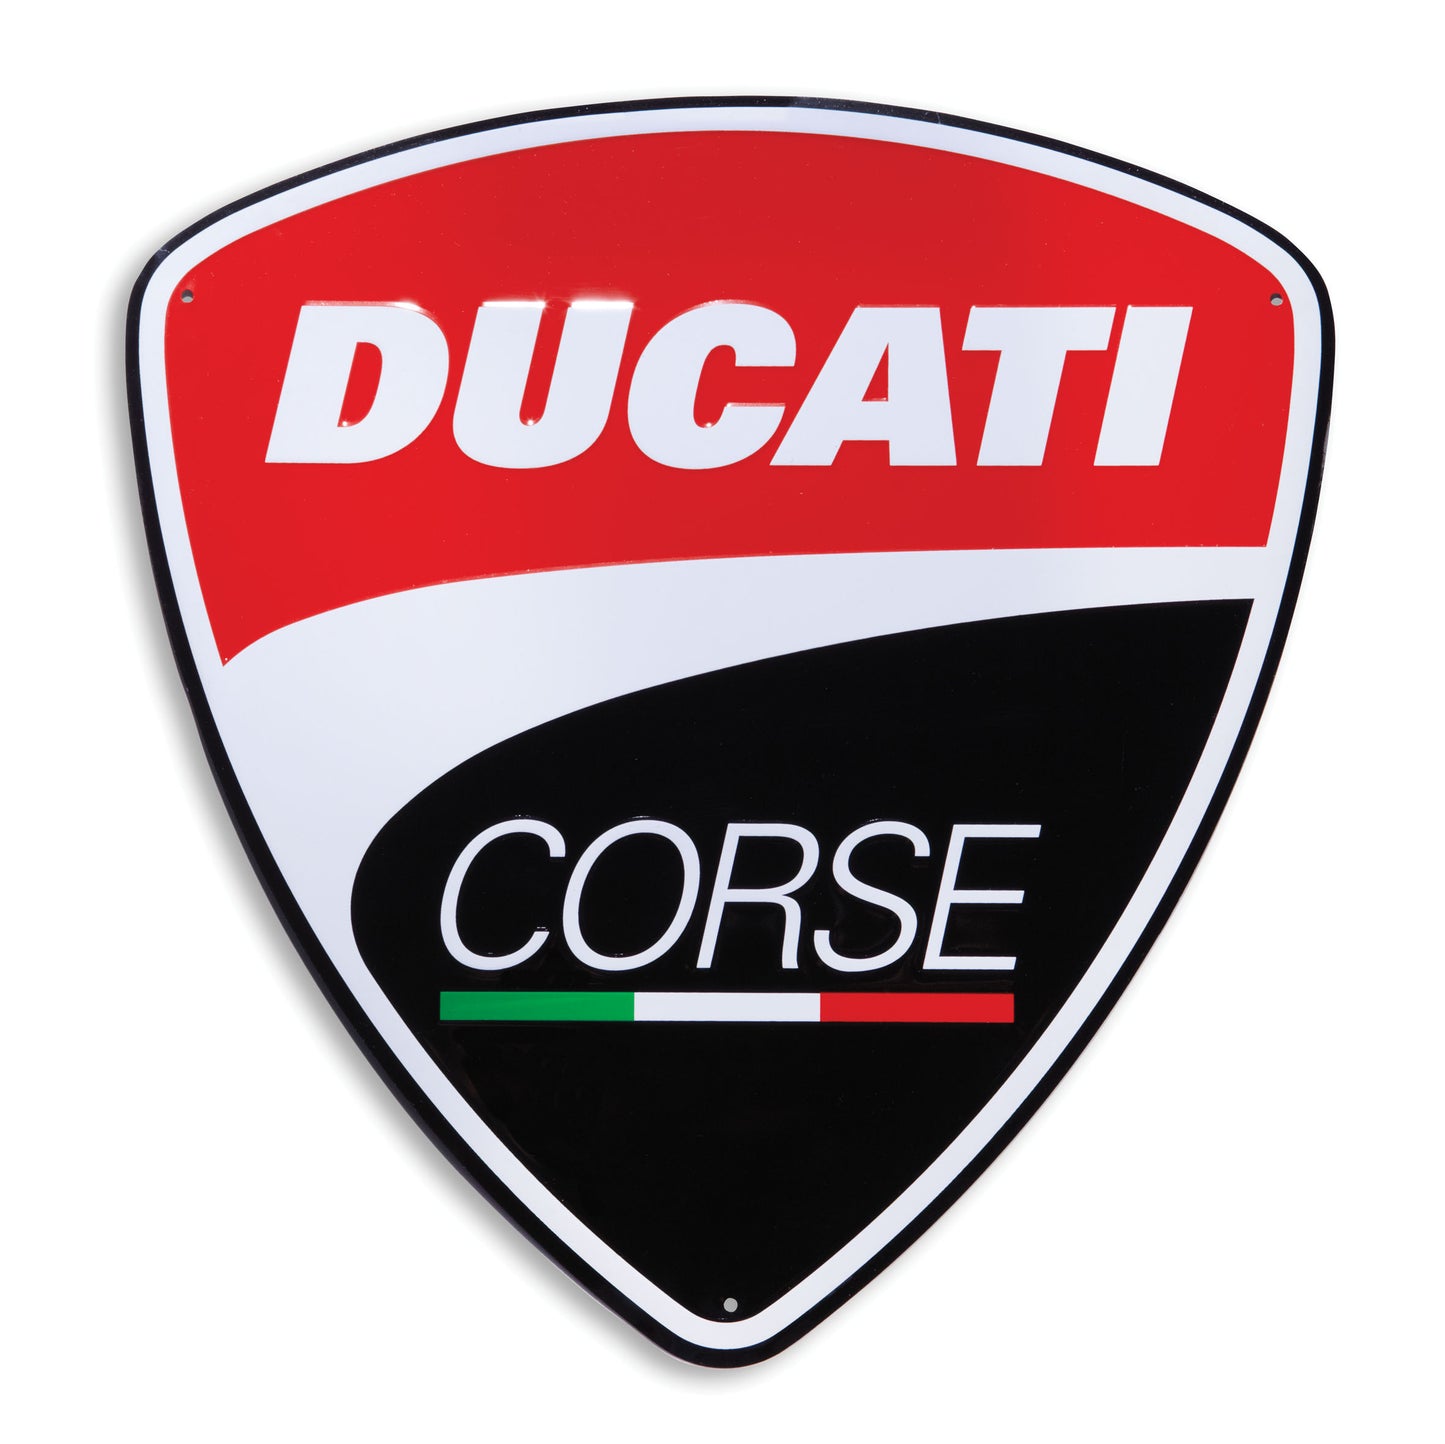 Ducati Corse Wall Sign- Display 987691016